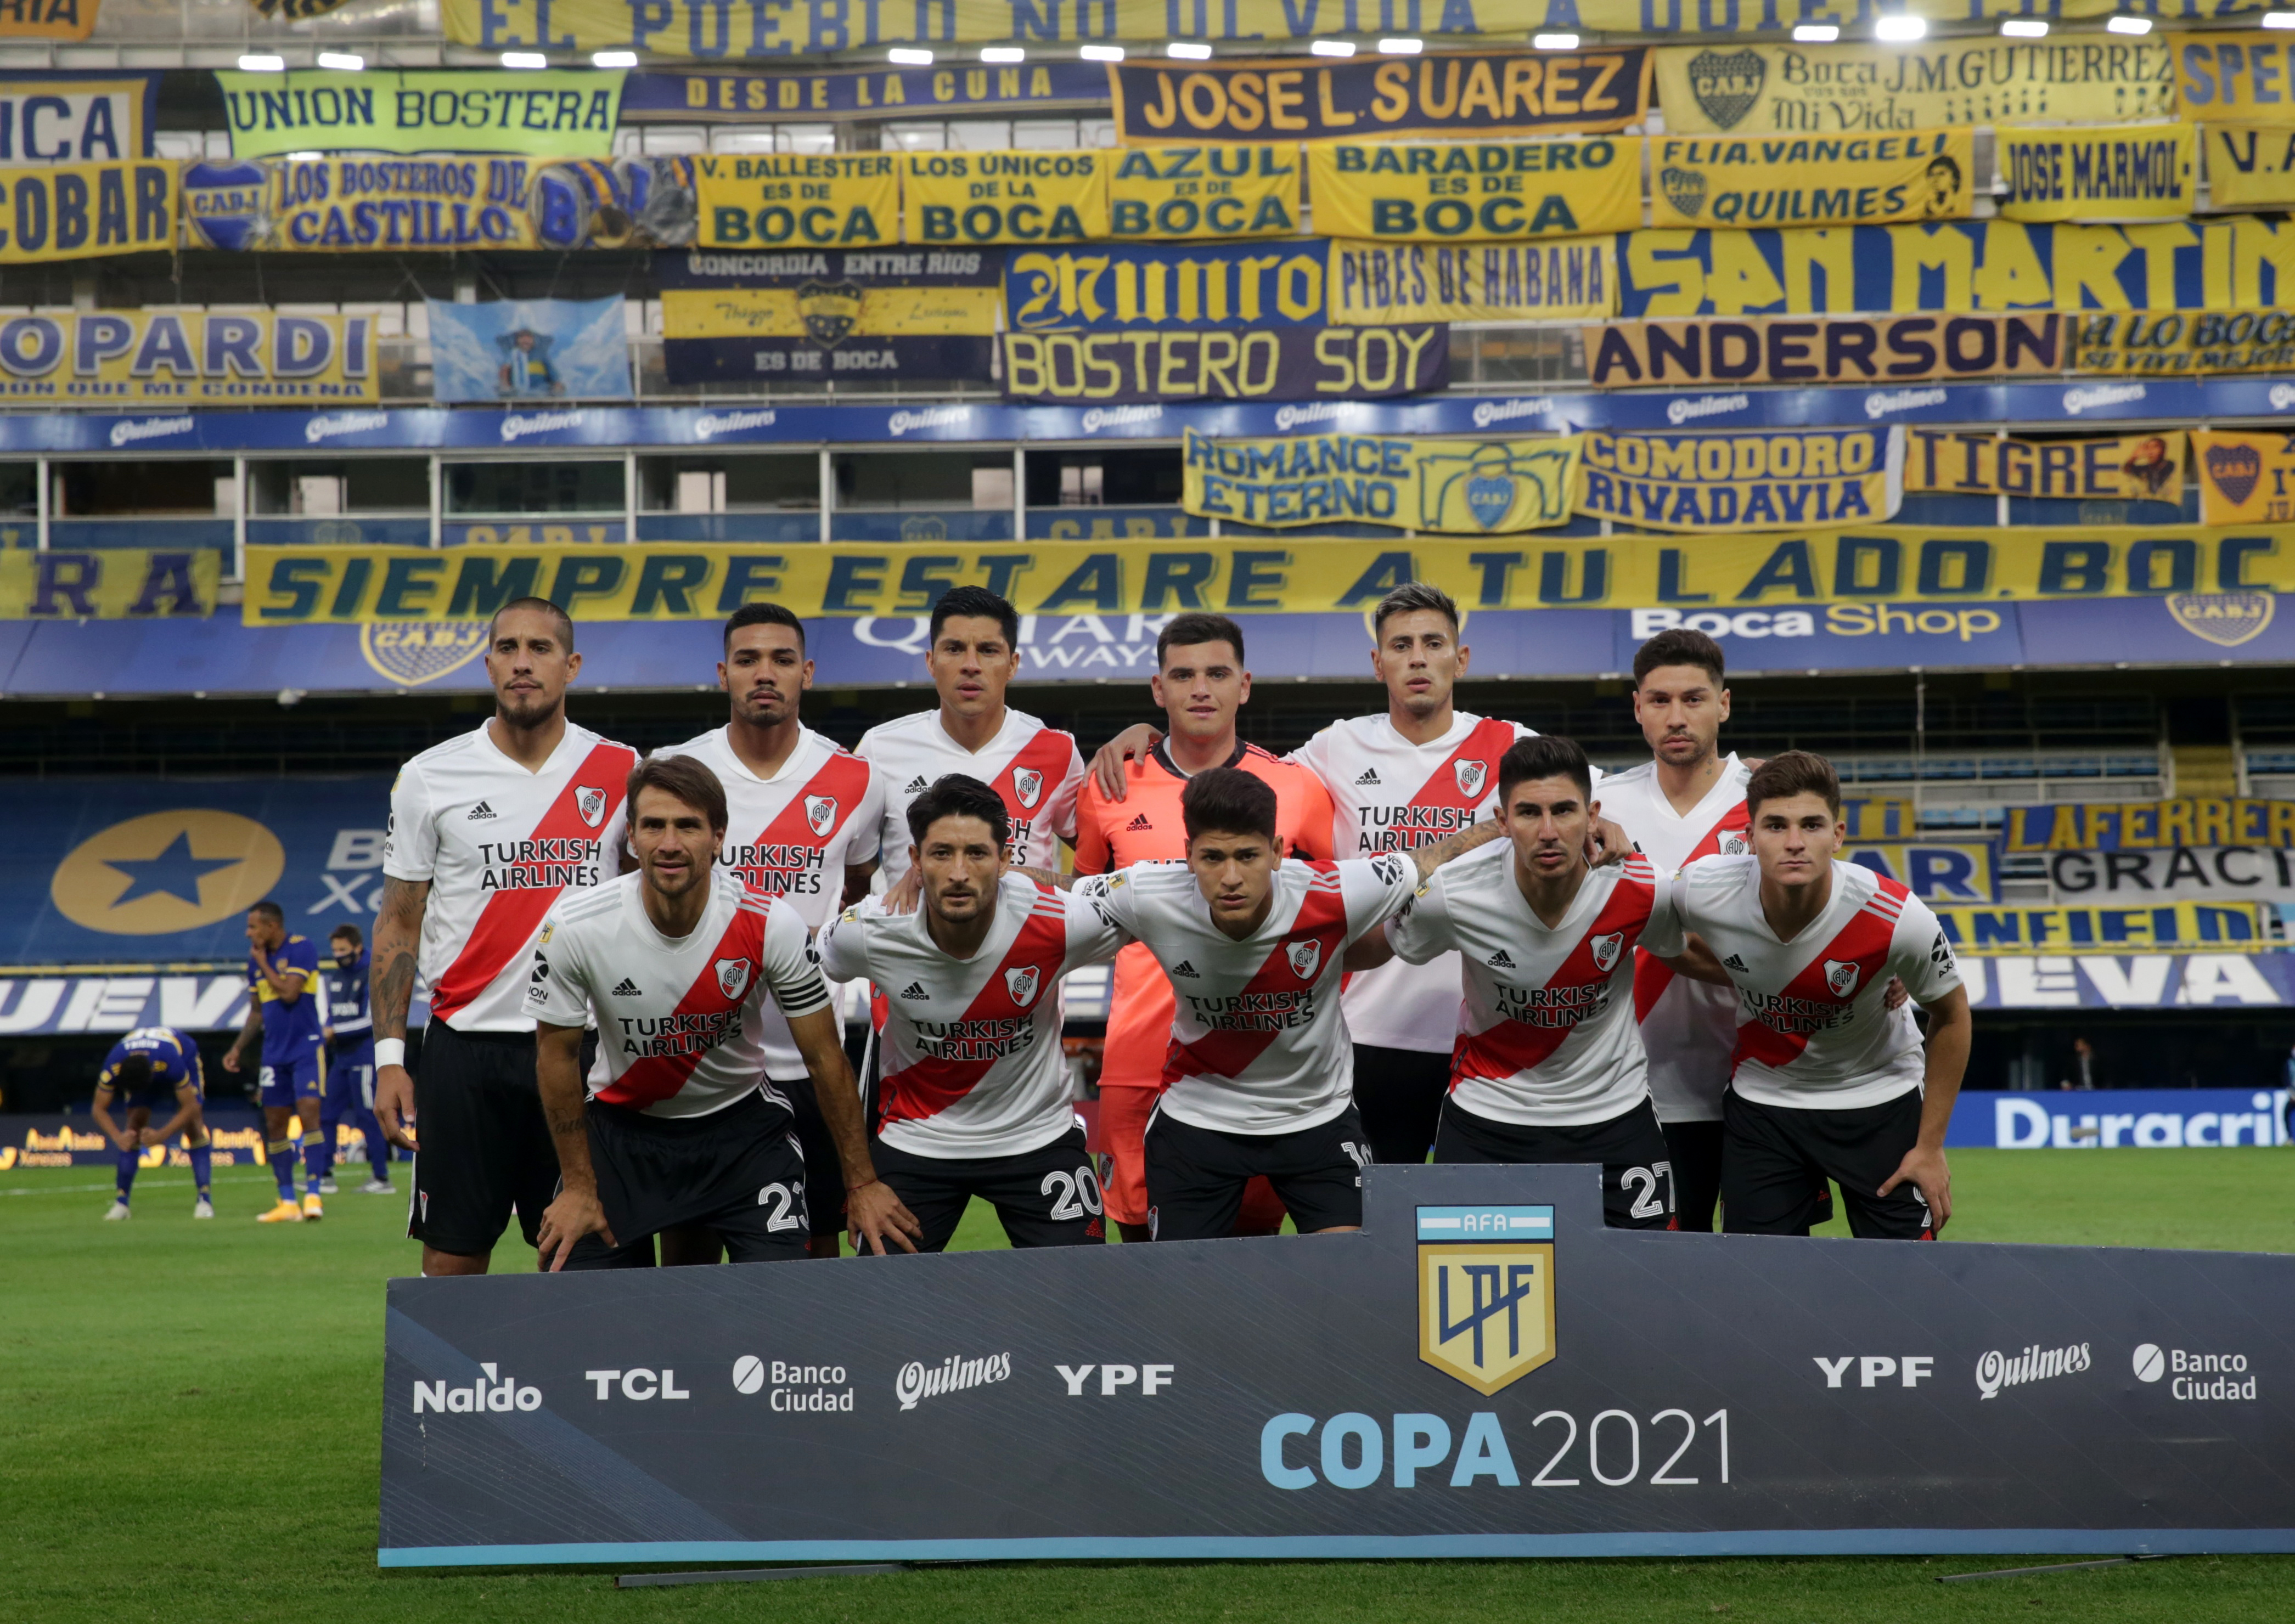 El equipo de River que jugó el último domingo ante Boca en La Bombonera, sin los 15 futbolistas iniciales que contrajeron coronavirus (REUTERS/Daniel Jayo)